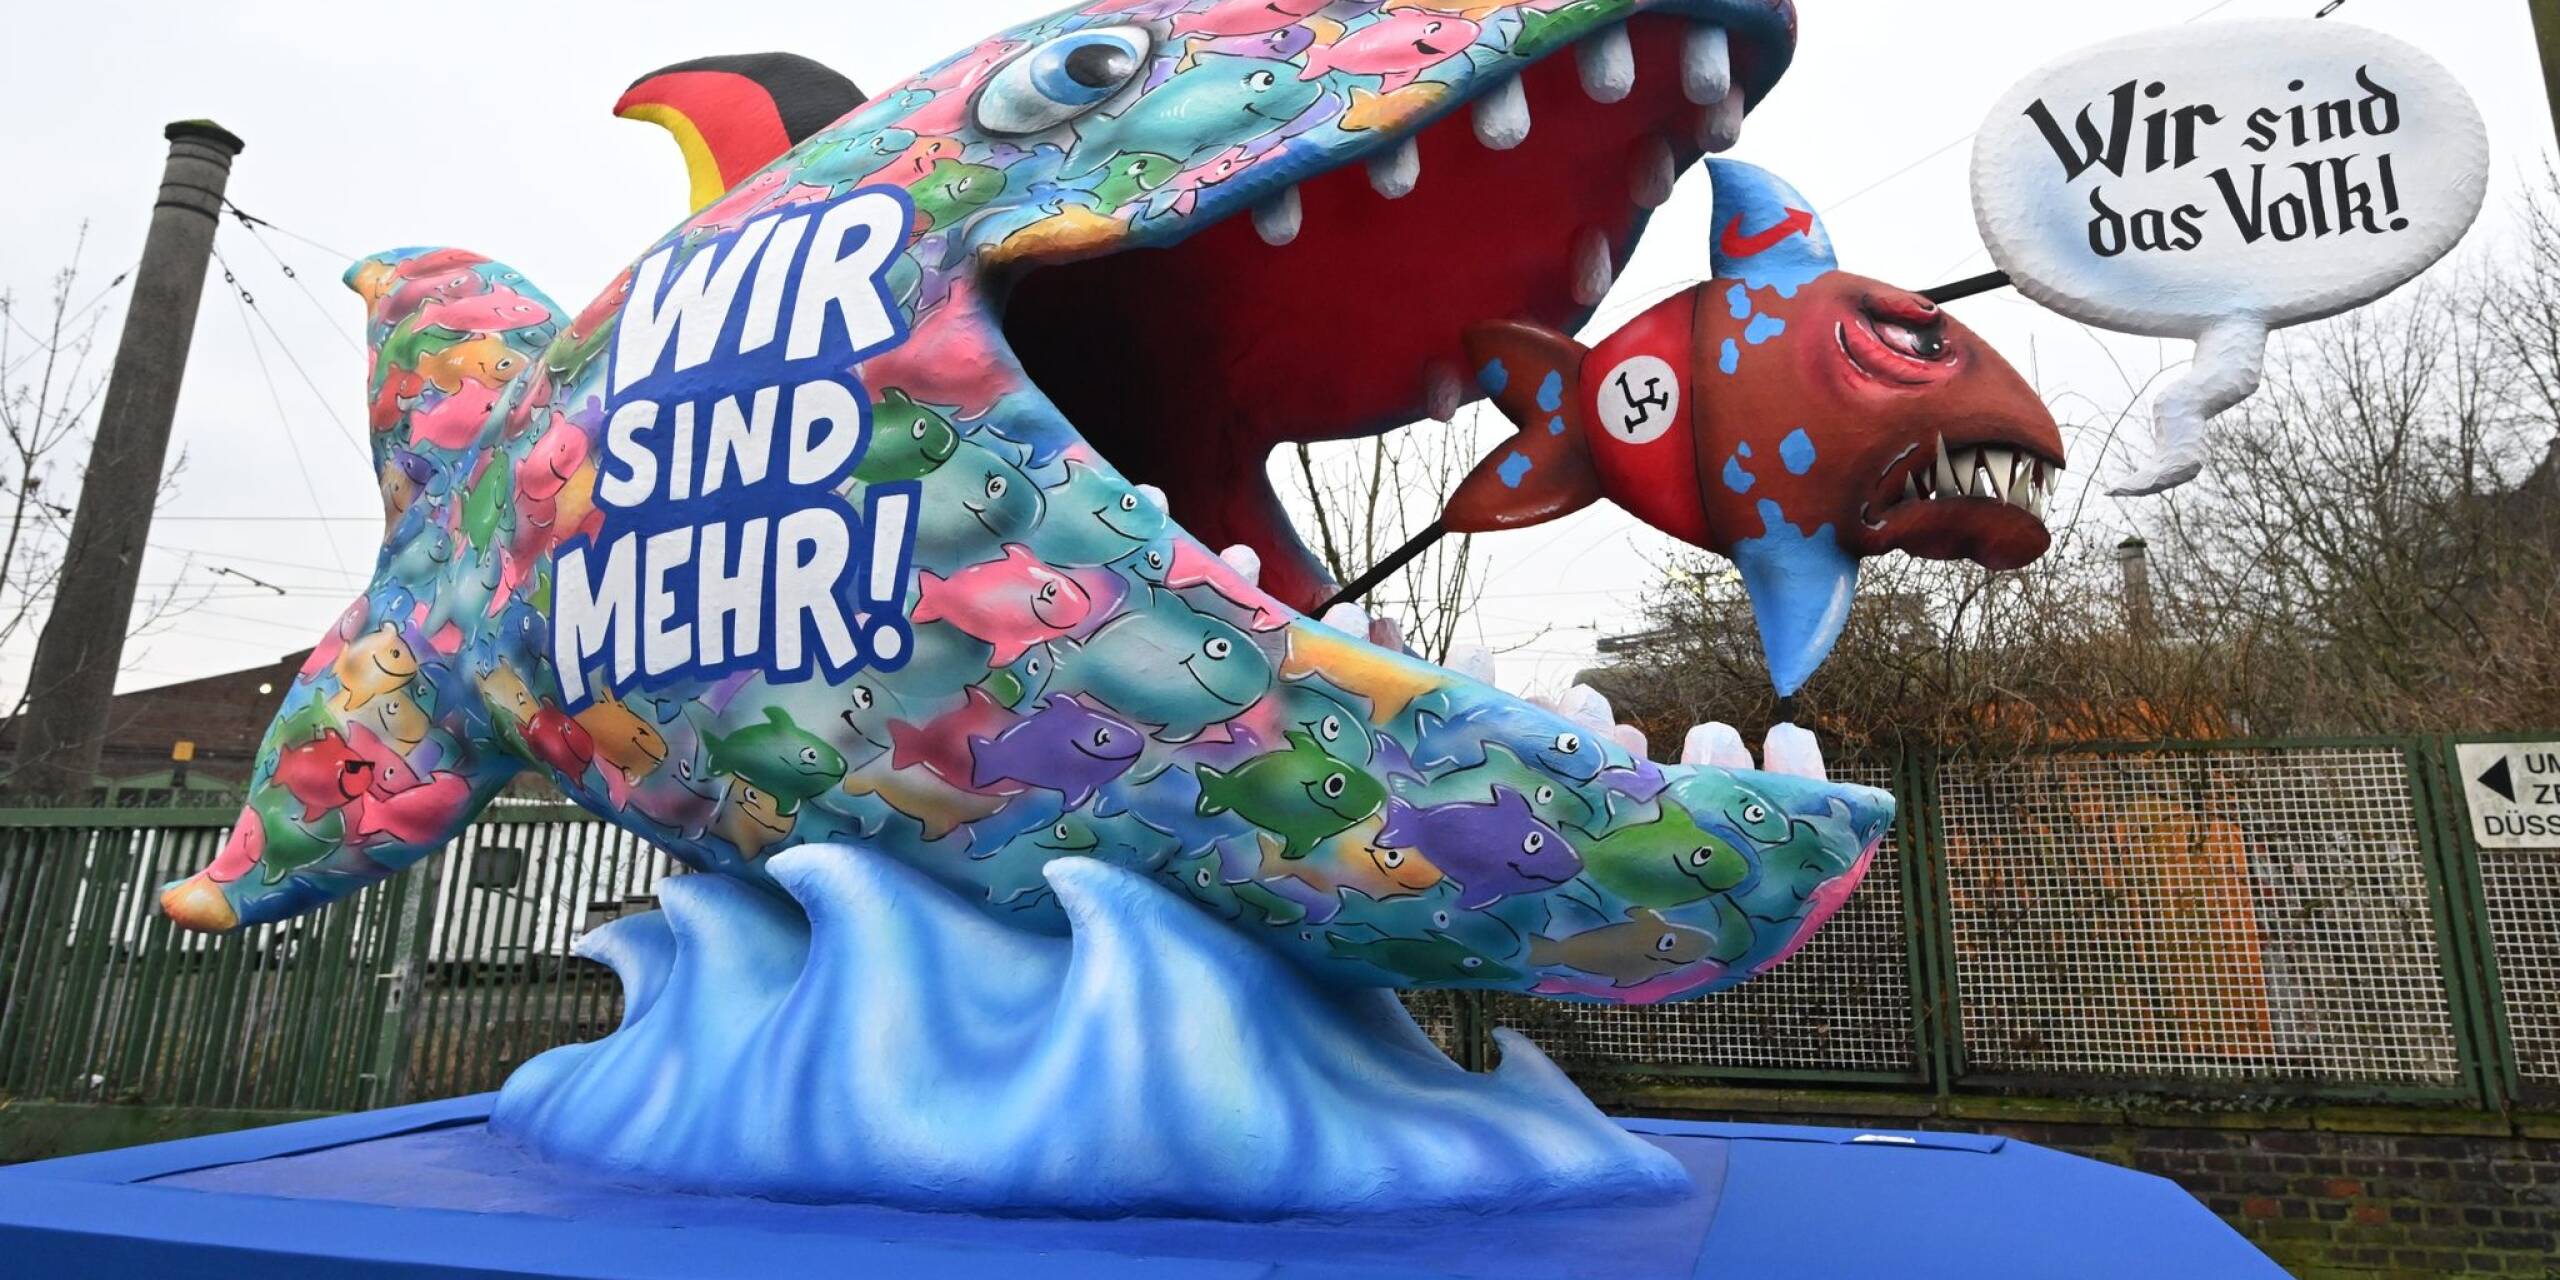 Eindeutige Botschaft beim Düsseldorfer Straßenkarneval: Ein großer bunter Fisch mit schwarz-rot-goldener Flosse verschlingt einen kleineren mit AfD-Logo auf der Flosse.